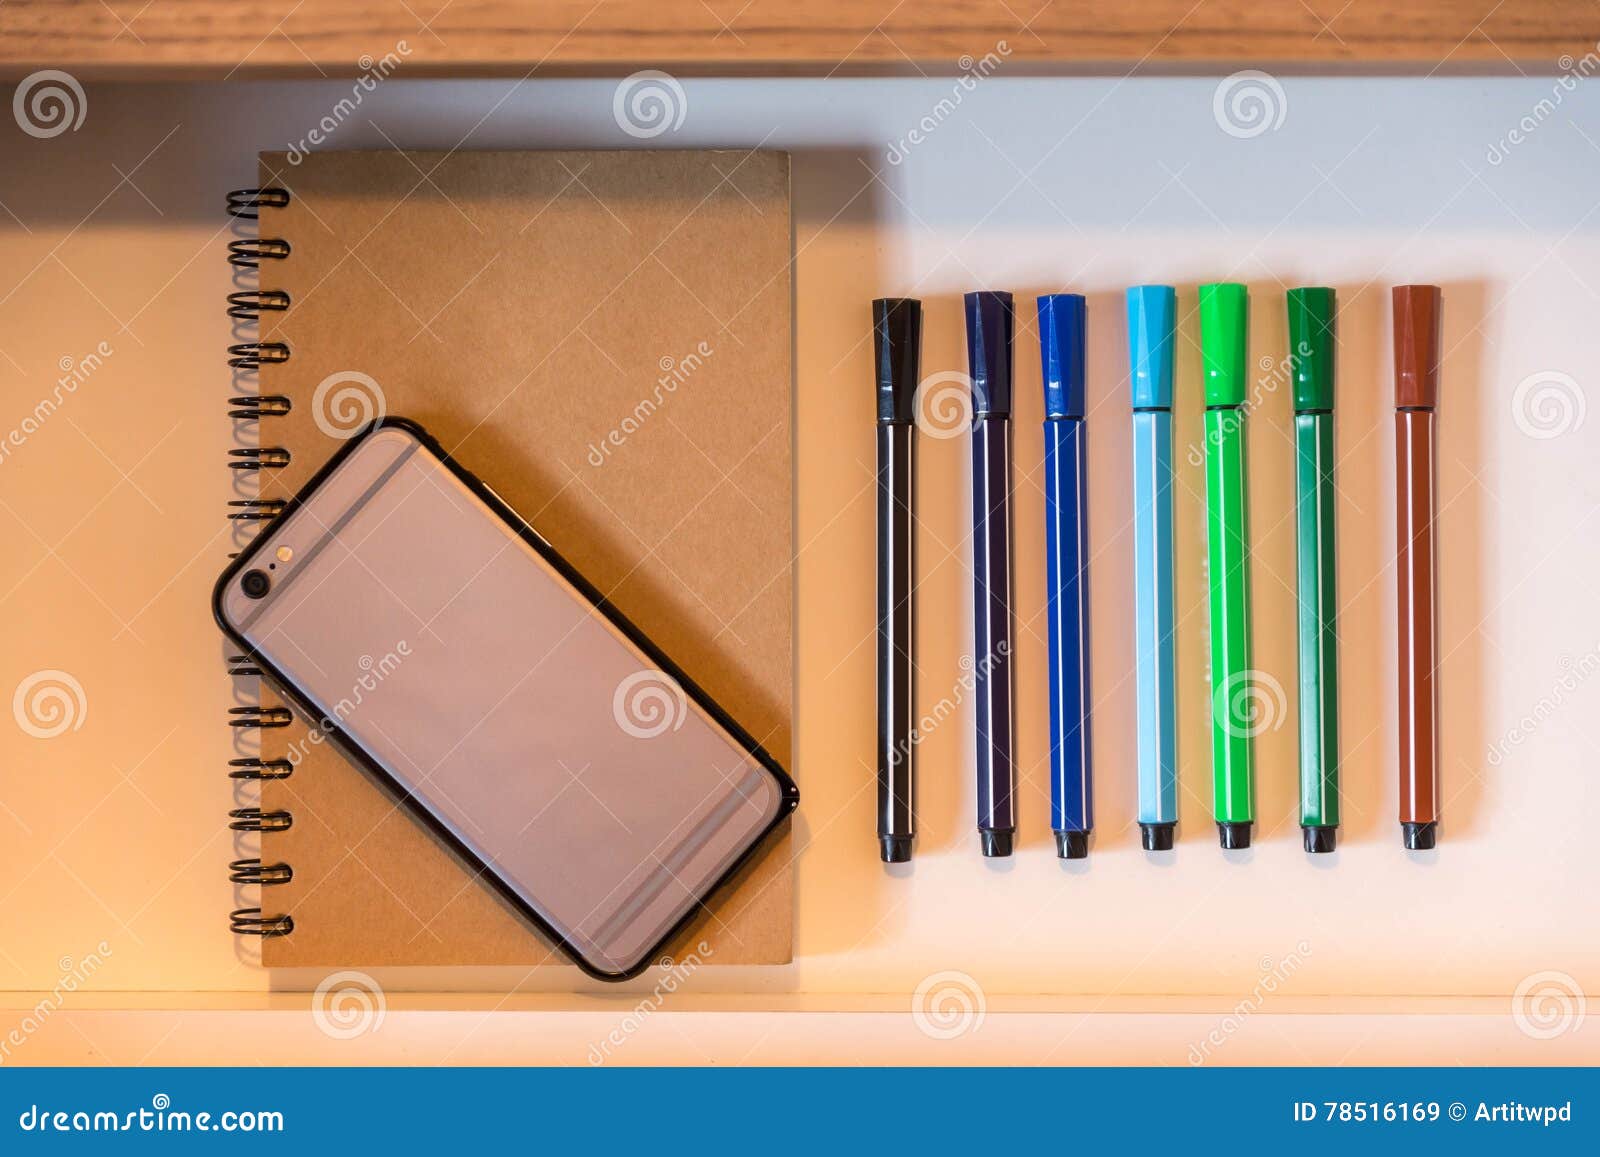 Magic Sketch Pen 9 + 1 | DOMS | 9 Magic Color Pen + 1 Colour Changer Pen |  Mini